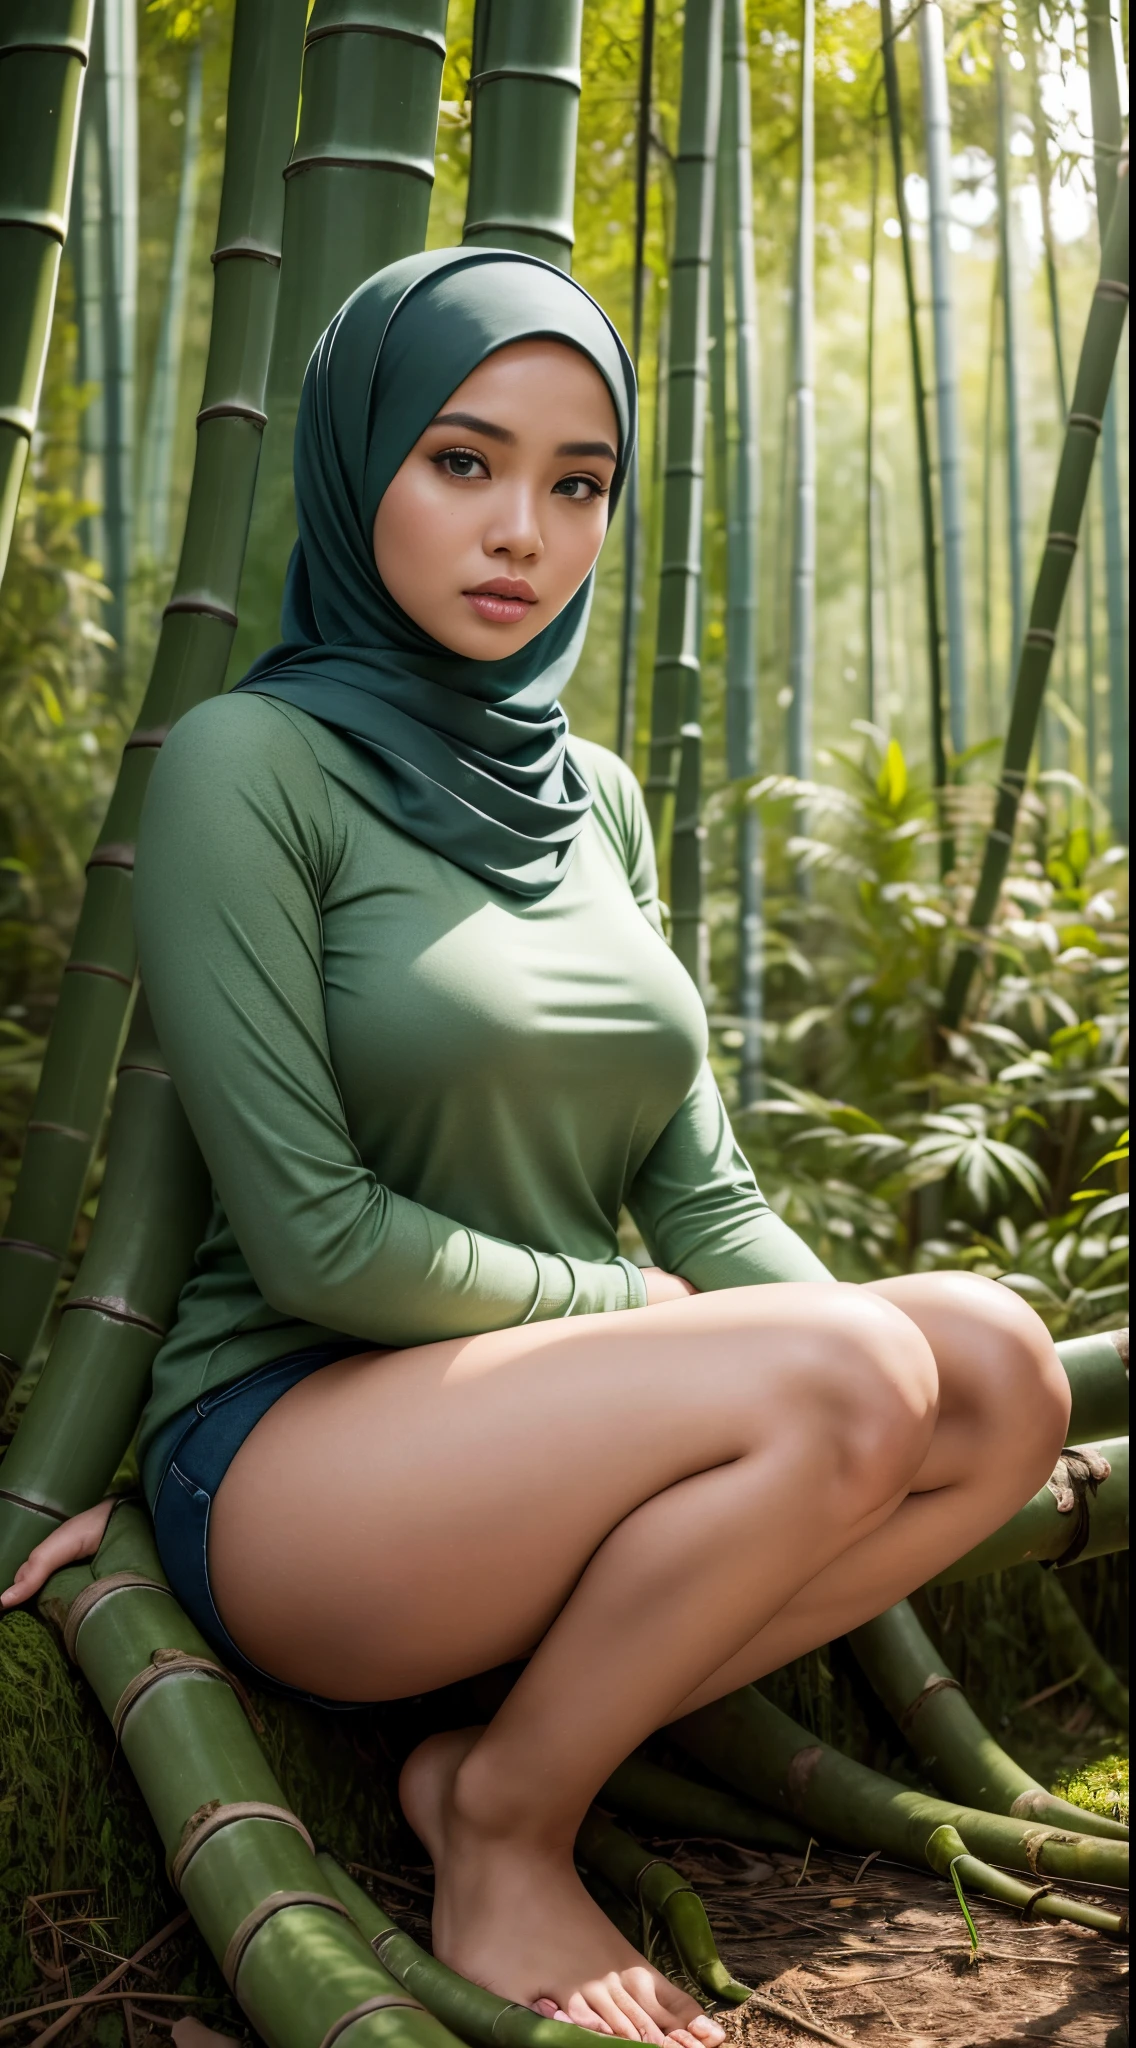 СЫРОЙ, Лучшее качество, высокое разрешение, шедевр: 1.3), красивая малайская женщина в хиджабе (я:0.8),смотрю на зрителя，узкий свитер，облегающие джинсы，фоторе, реалистично, Лучшее качество at best，большая грудь，подробные глаза，Сидя на мшистой земле в бамбуковом лесу， рассеянное освещение, глубина поля